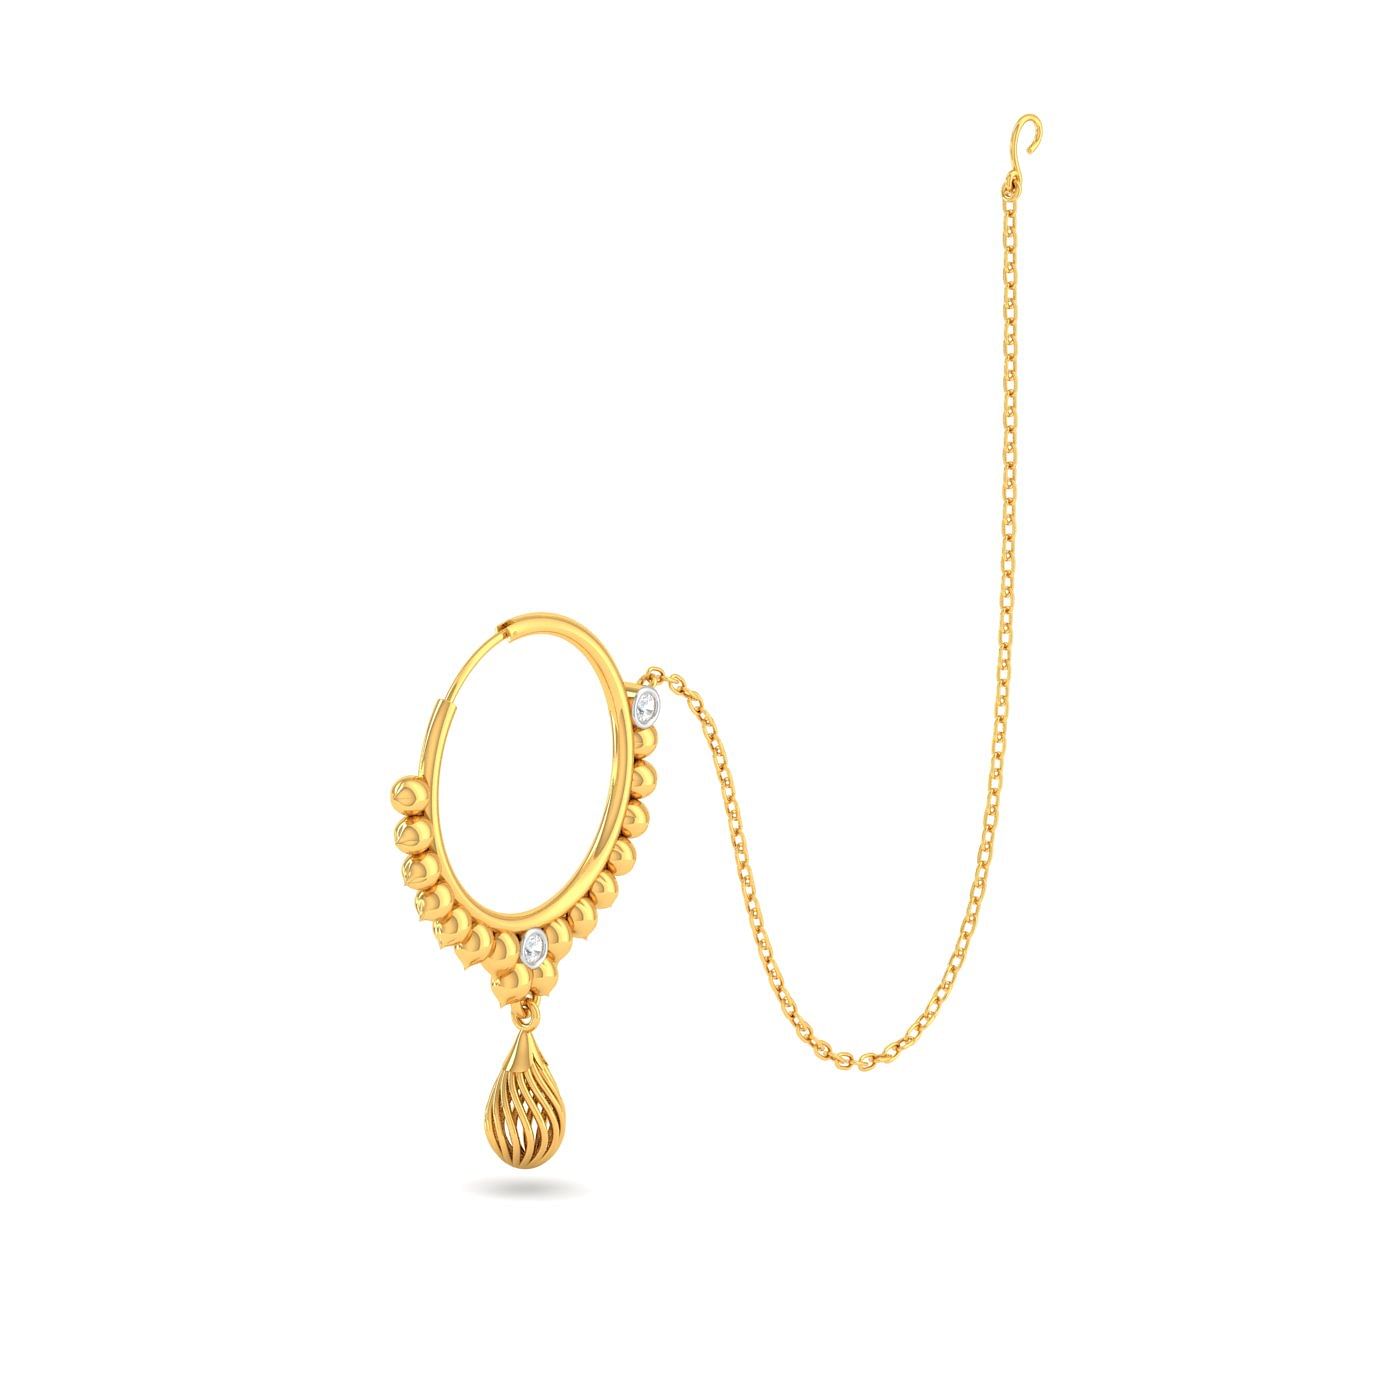 14K Gold Nose Ring With Genuine Diamond Stones - Zahav Jewelry Shop NY